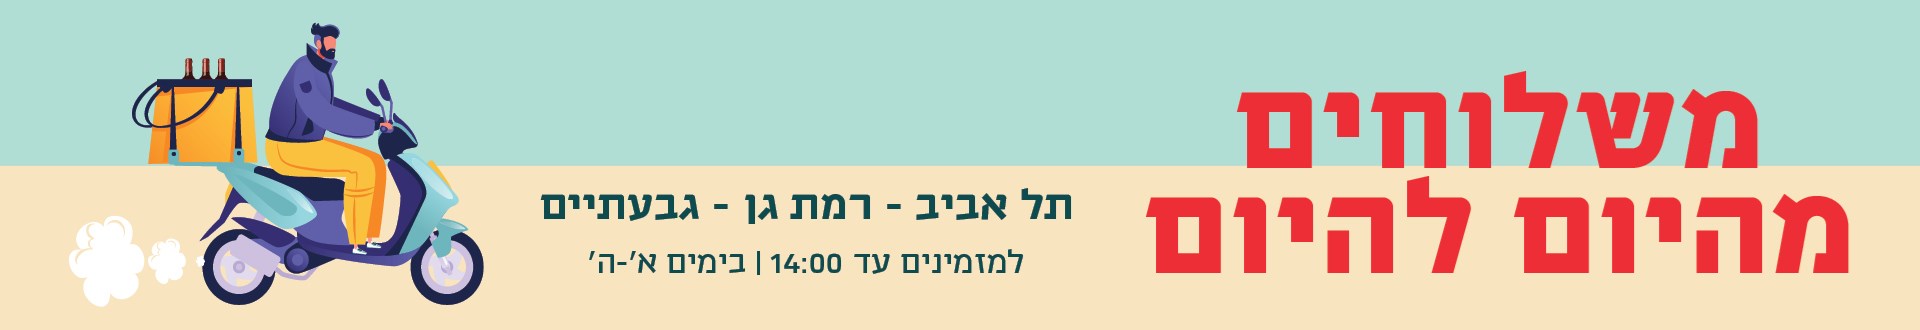 באנר - מזמינים היום מקבלים היום!  לישובים הבאים: תל אביב-רמת גן-גבעתיים